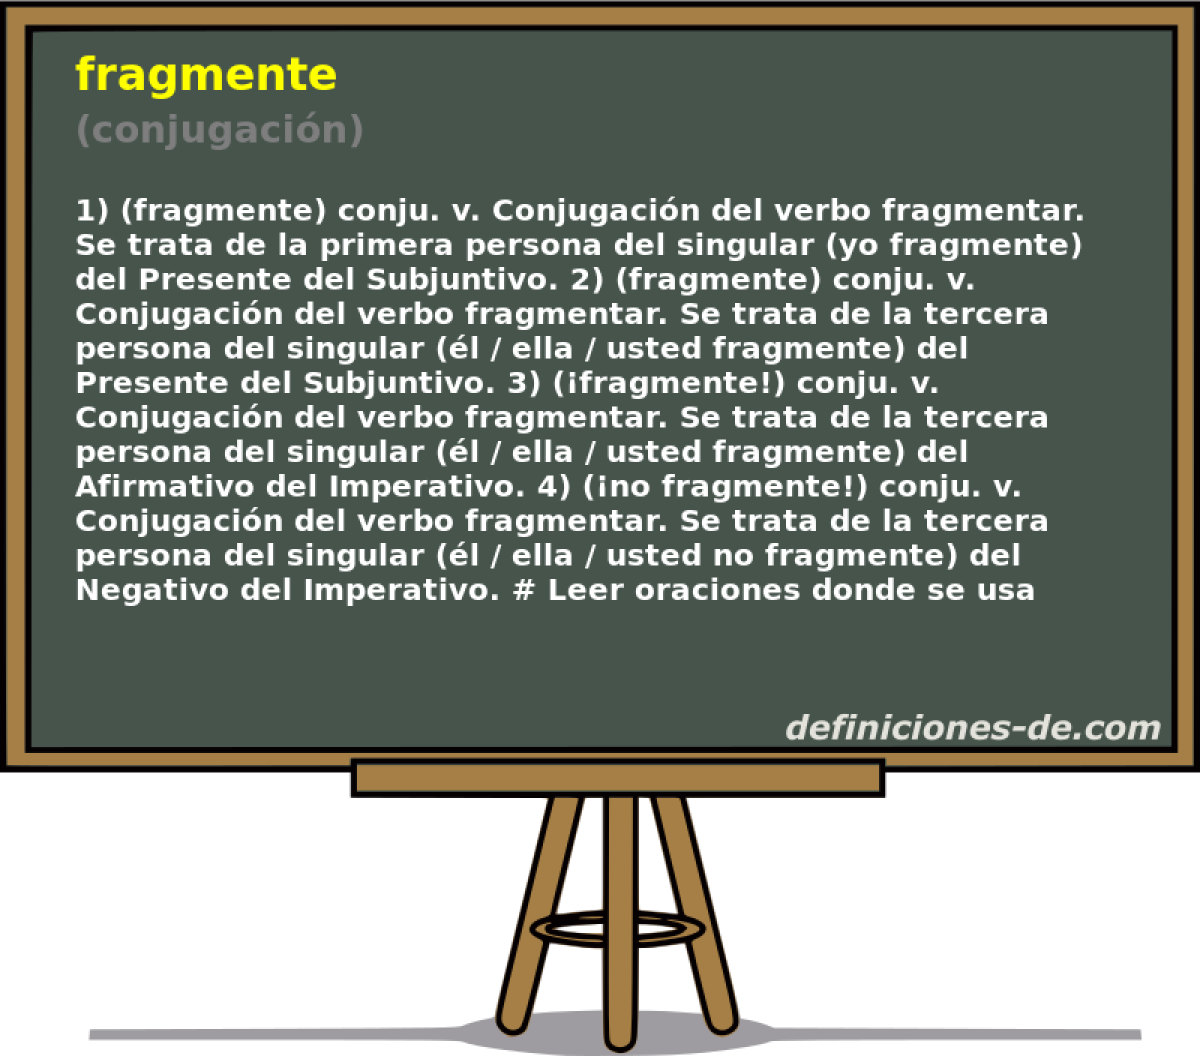 fragmente (conjugacin)